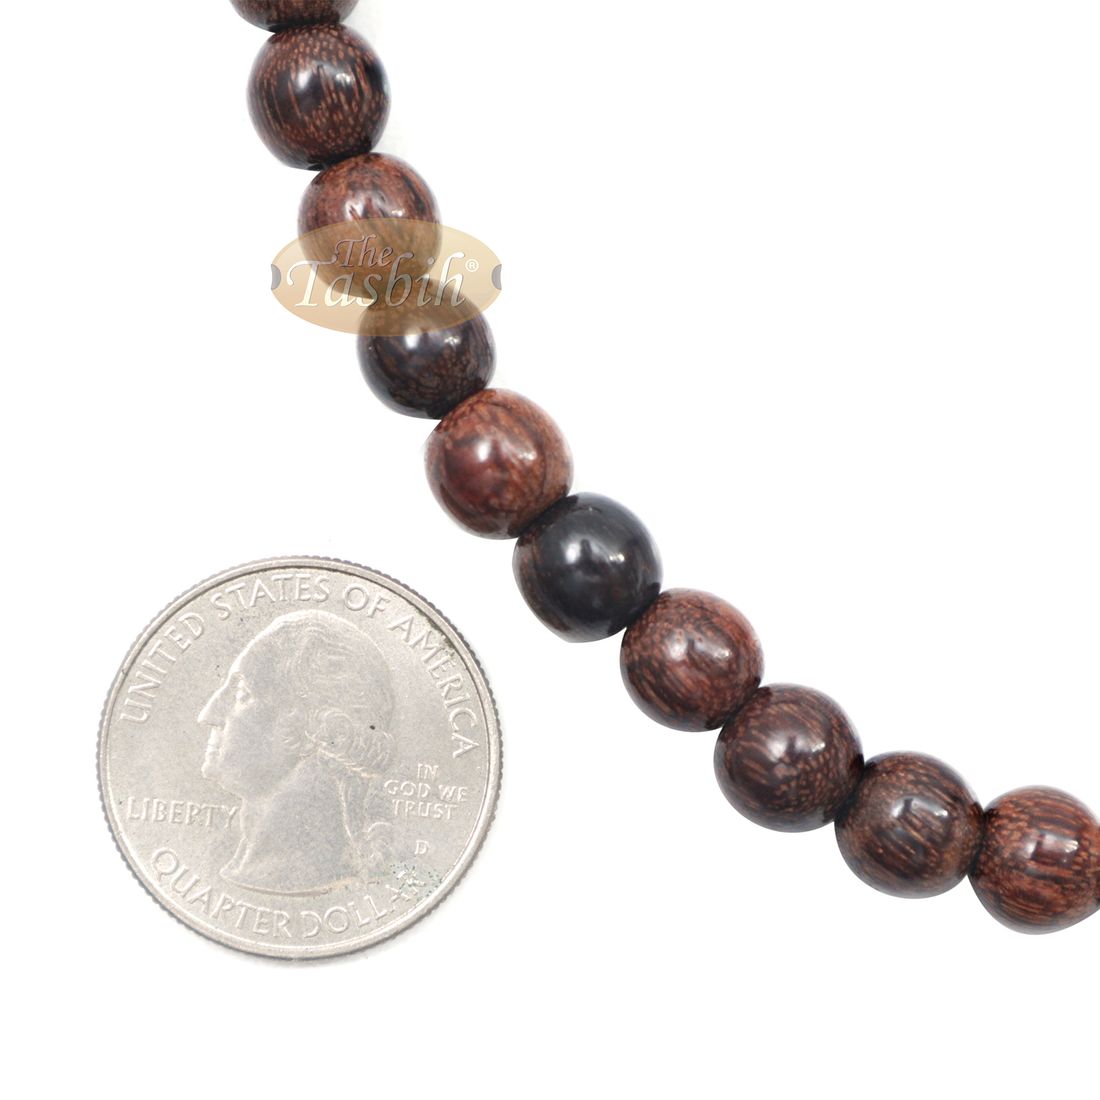 Tamarind Tree Tasbih 8mm 99-bead Handmade Prayer Beads Worry Beads 2 Tassels